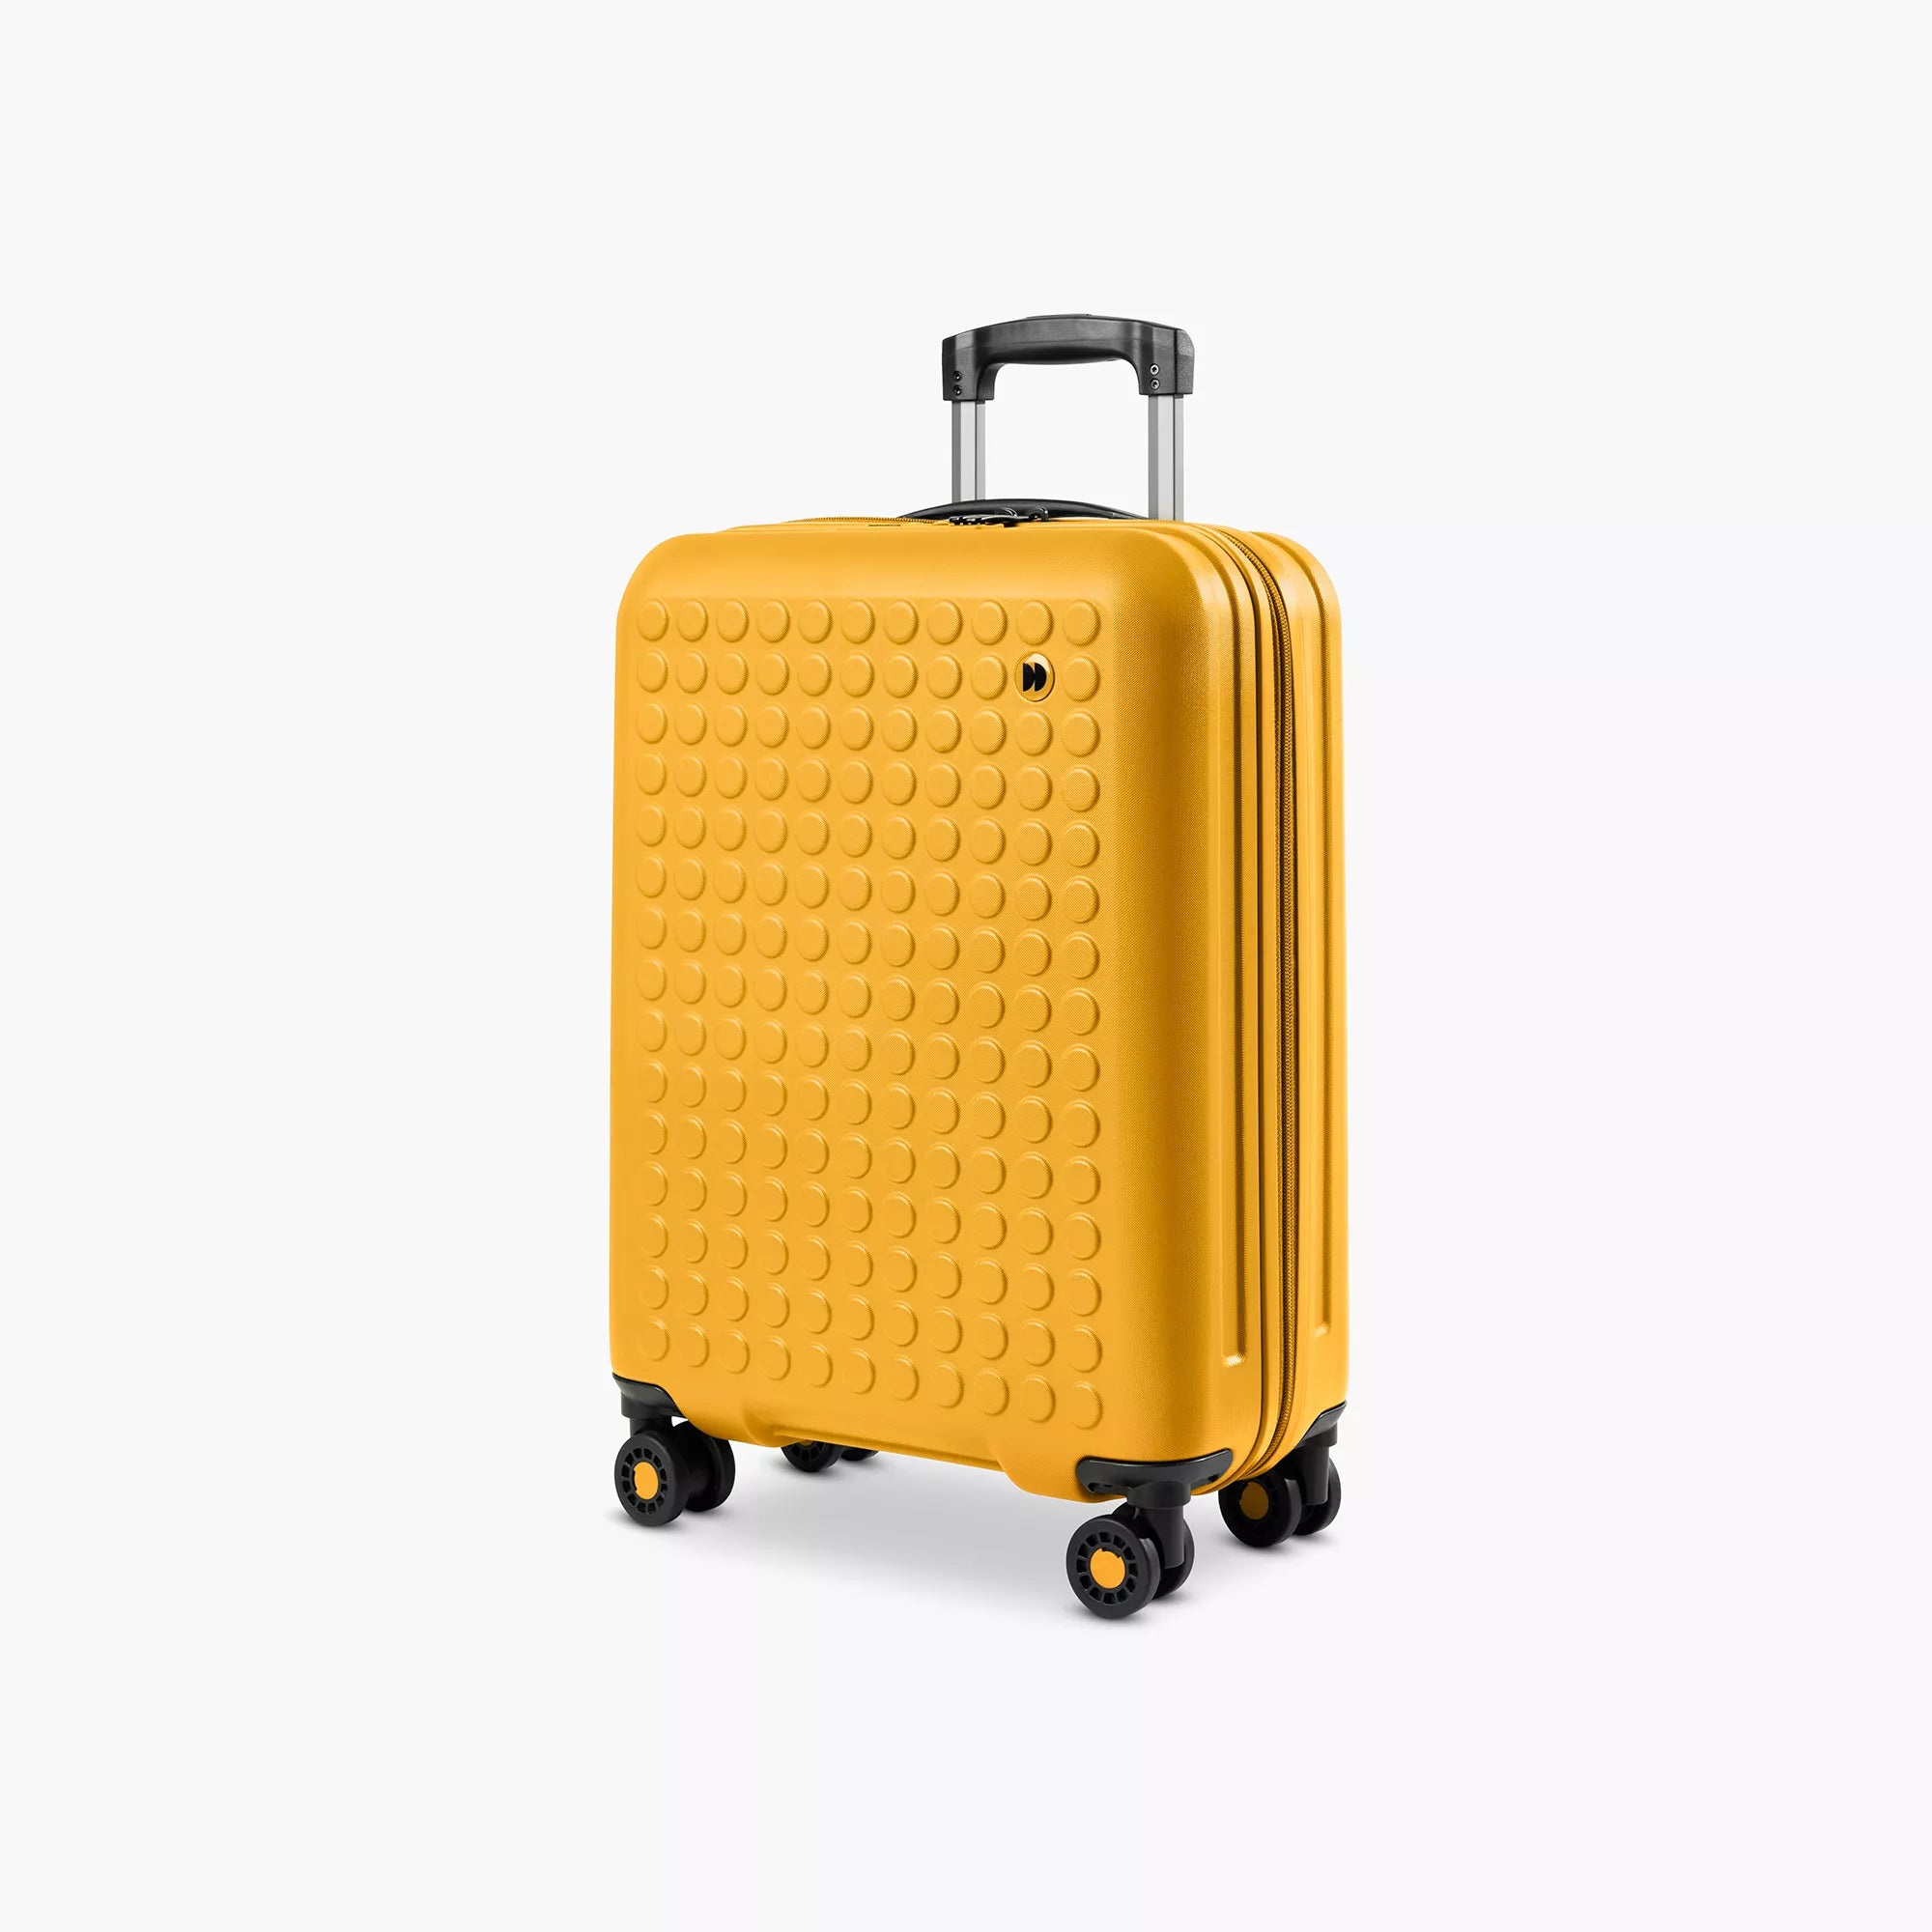 LSDJ7 - Grand carton pour valise Dioxines/HAP (40x80x40cm)